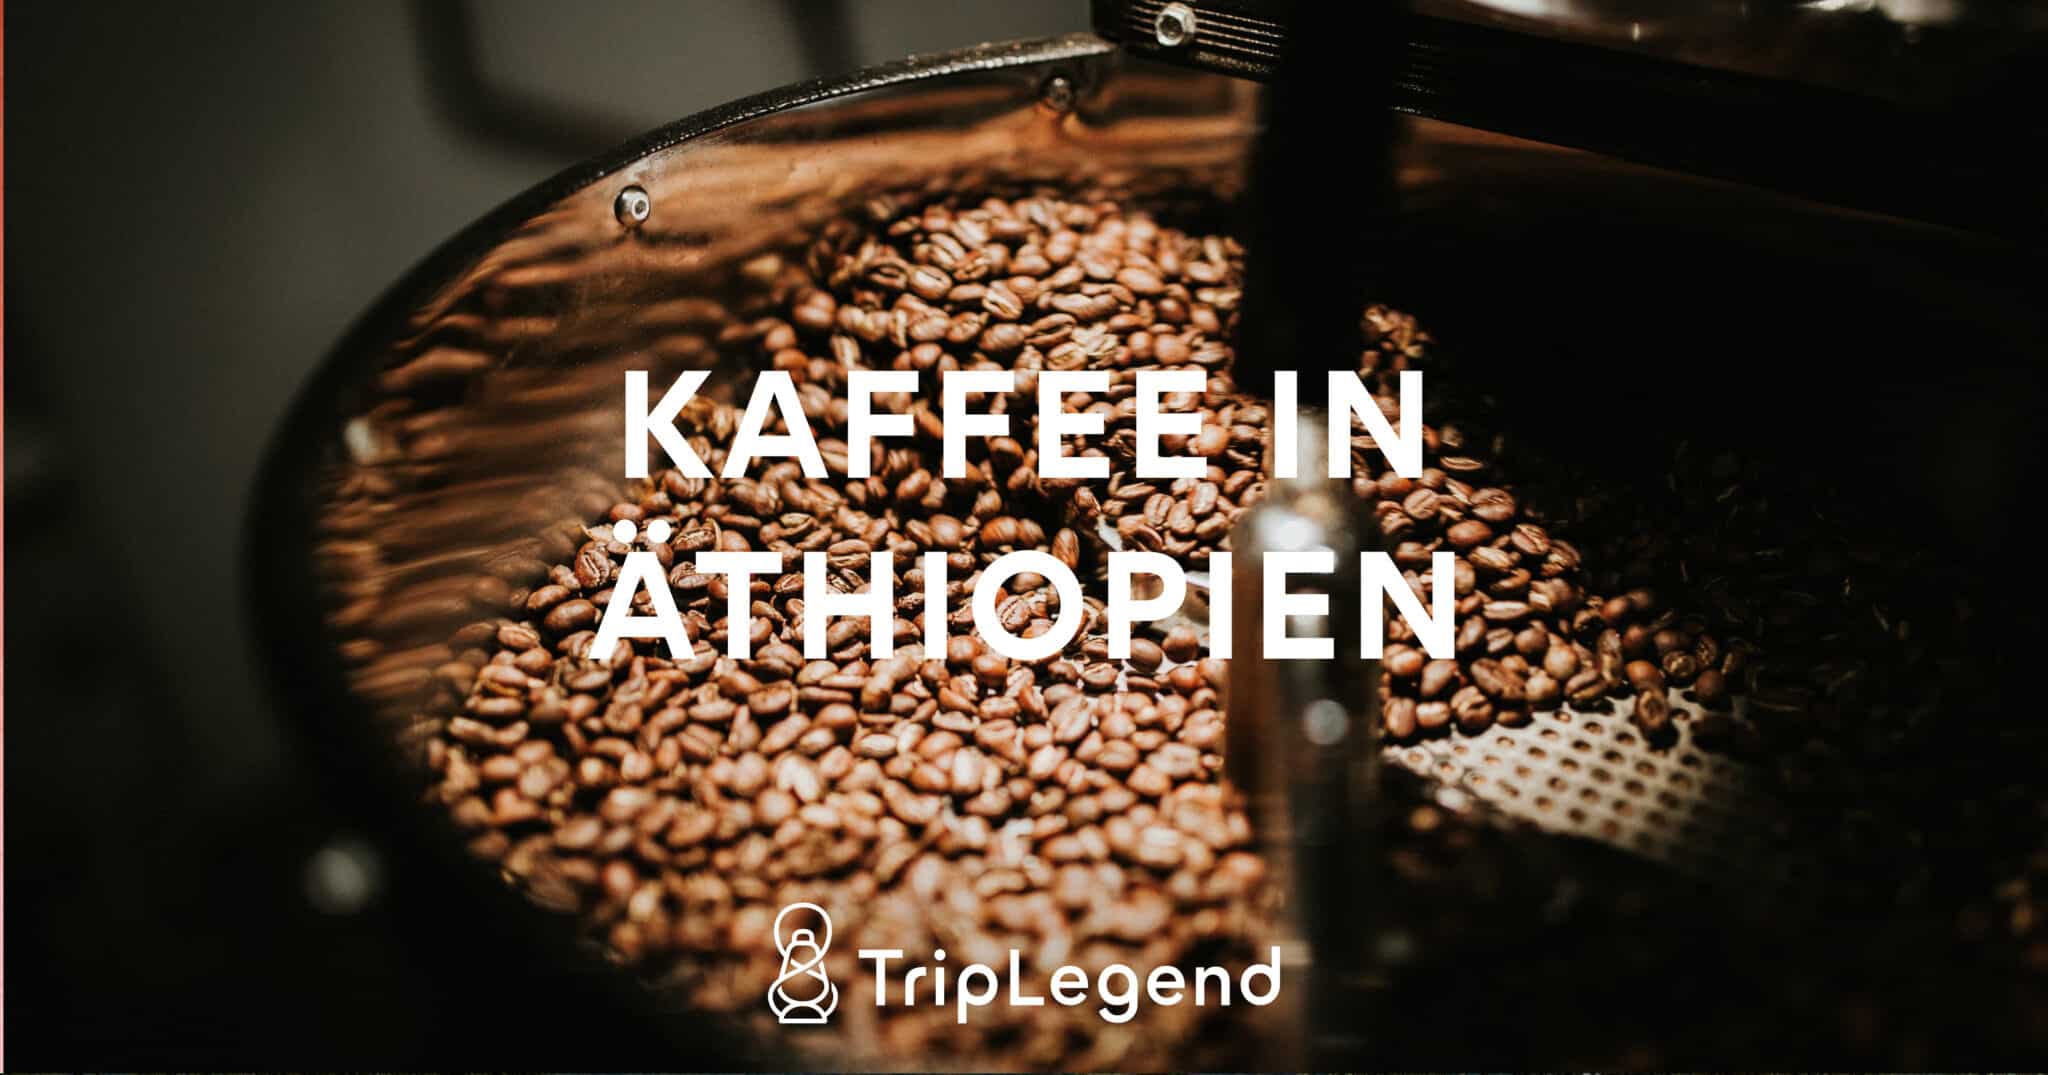 Kaffe i Etiopien skalas upp